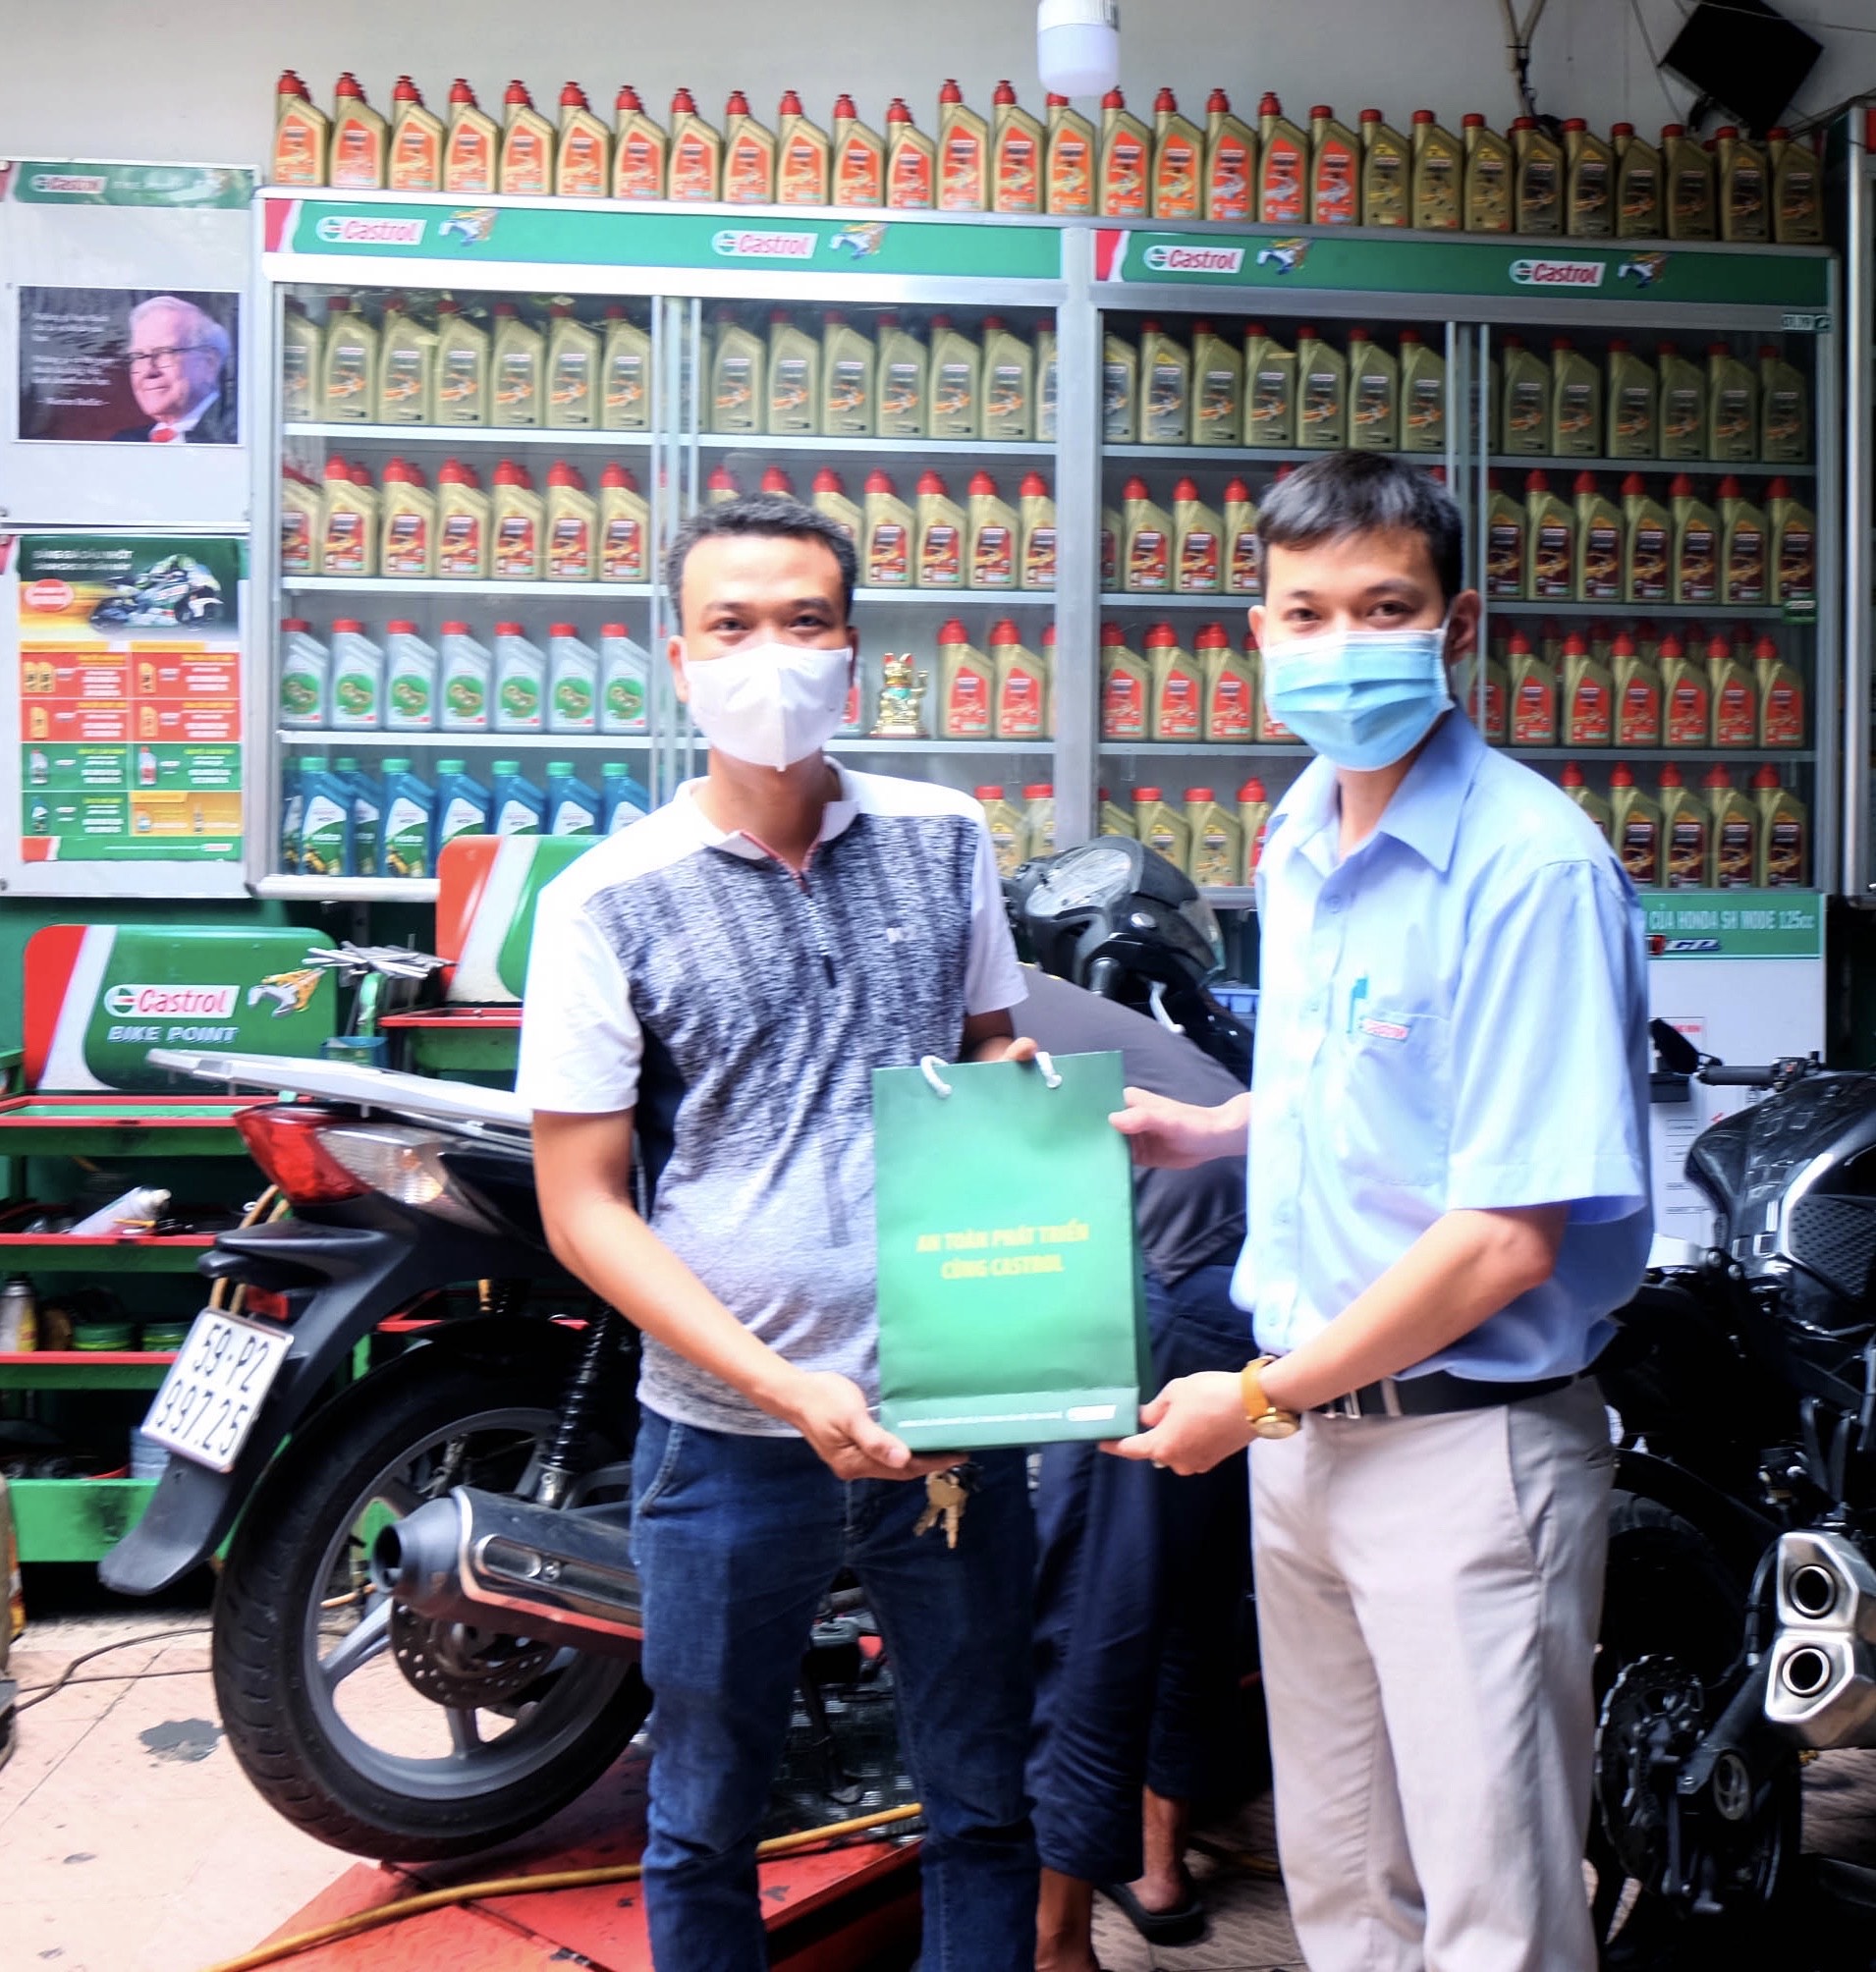 Món quà bảo vệ sức khỏe được đại diện Castrol trao cho anh Nguyễn Văn Tuyển, chủ cửa hàng Motor Thái Bình 1 và Motor Thái Bình 2